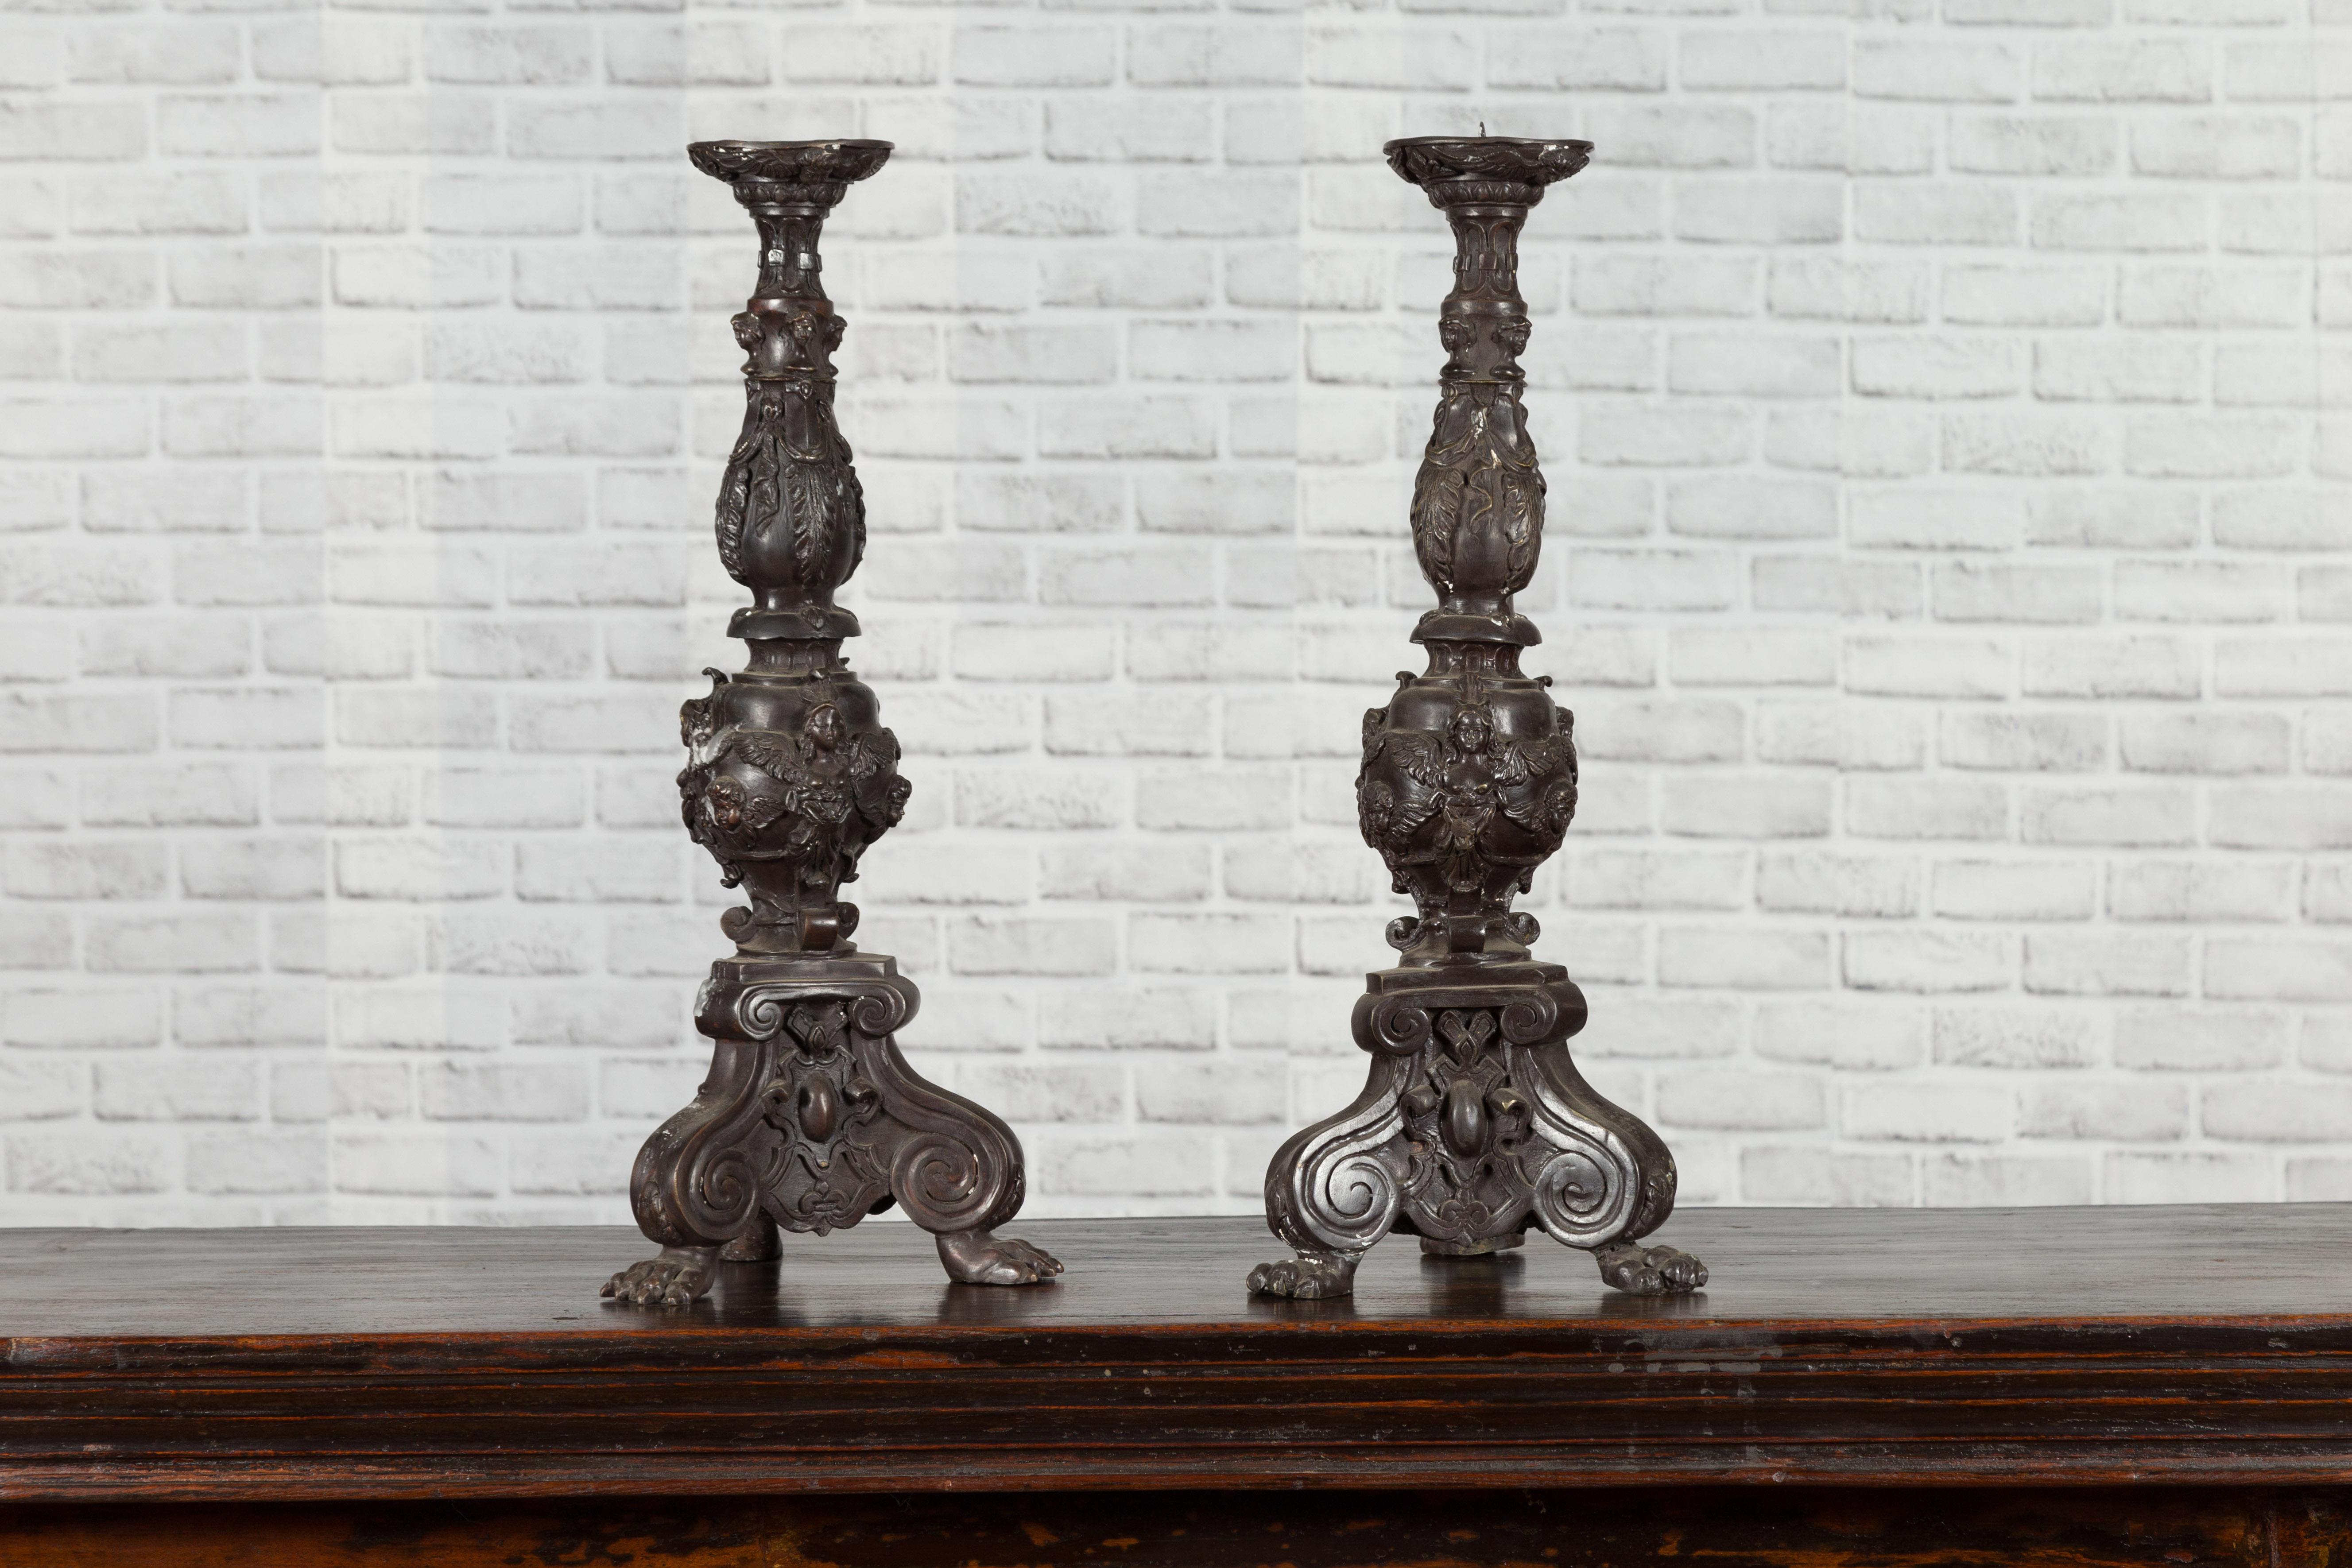 Paire de chandeliers vintage en bronze moulé de style baroque, datant du milieu du 20e siècle, avec des chérubins, des bases tripodes et des pieds en patte de lion. Créée avec la technique traditionnelle de la cire perdue qui permet une grande